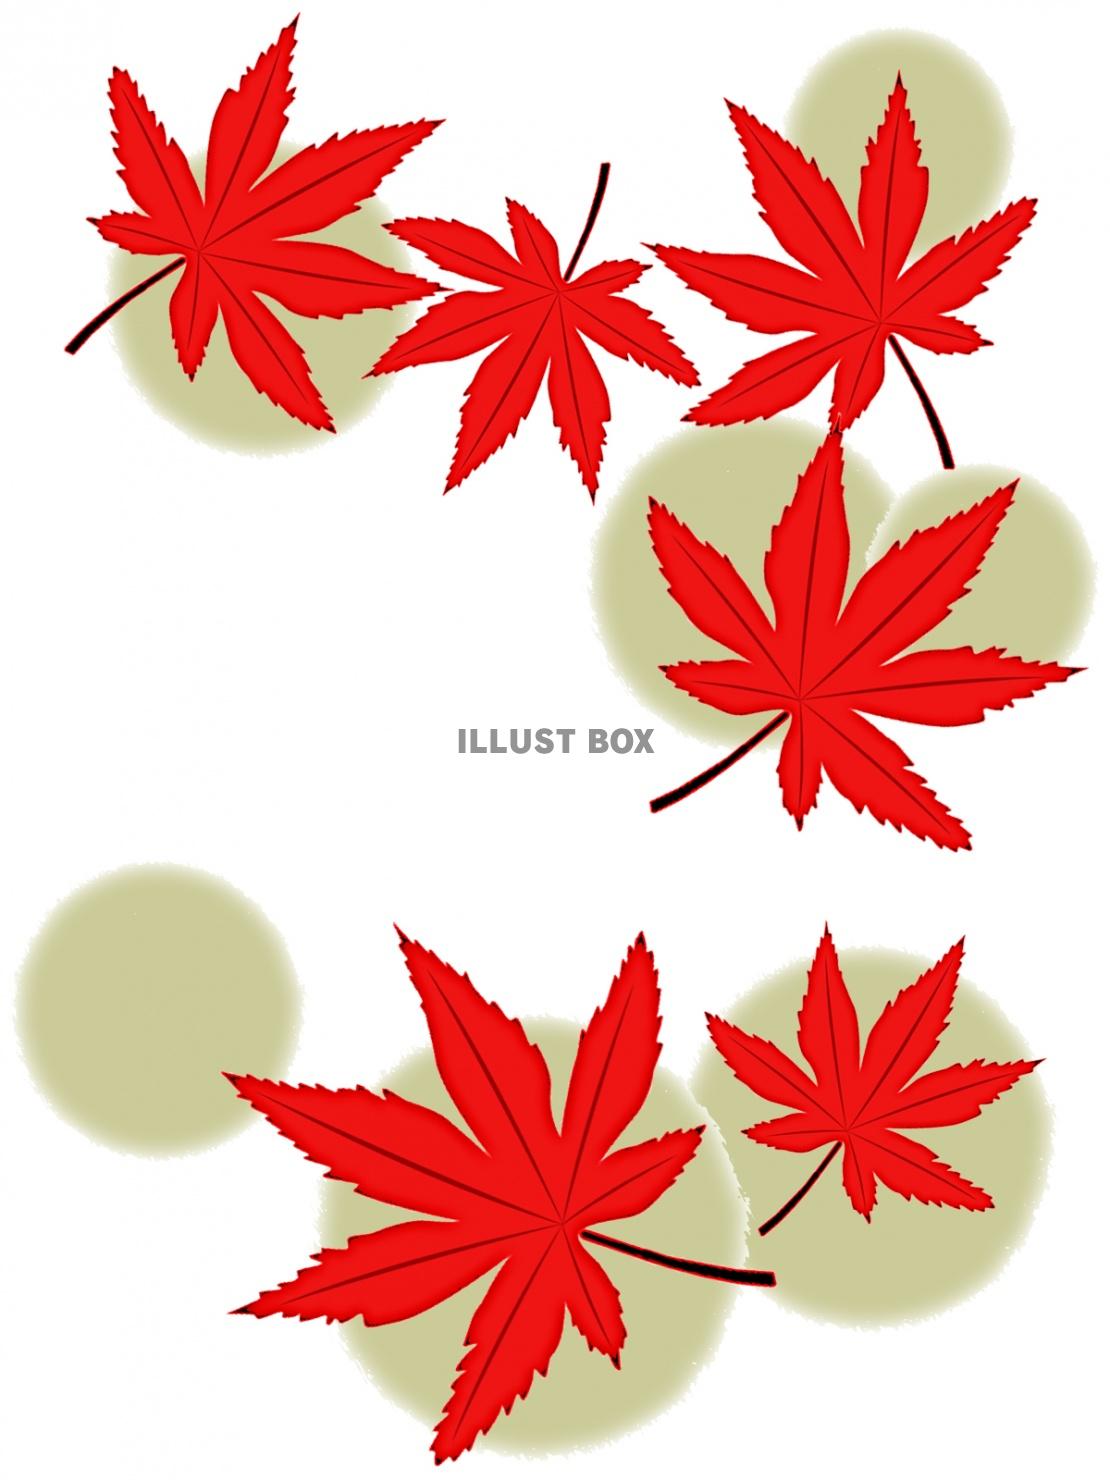 紅葉の葉っぱ壁紙シンプル背景素材イラスト